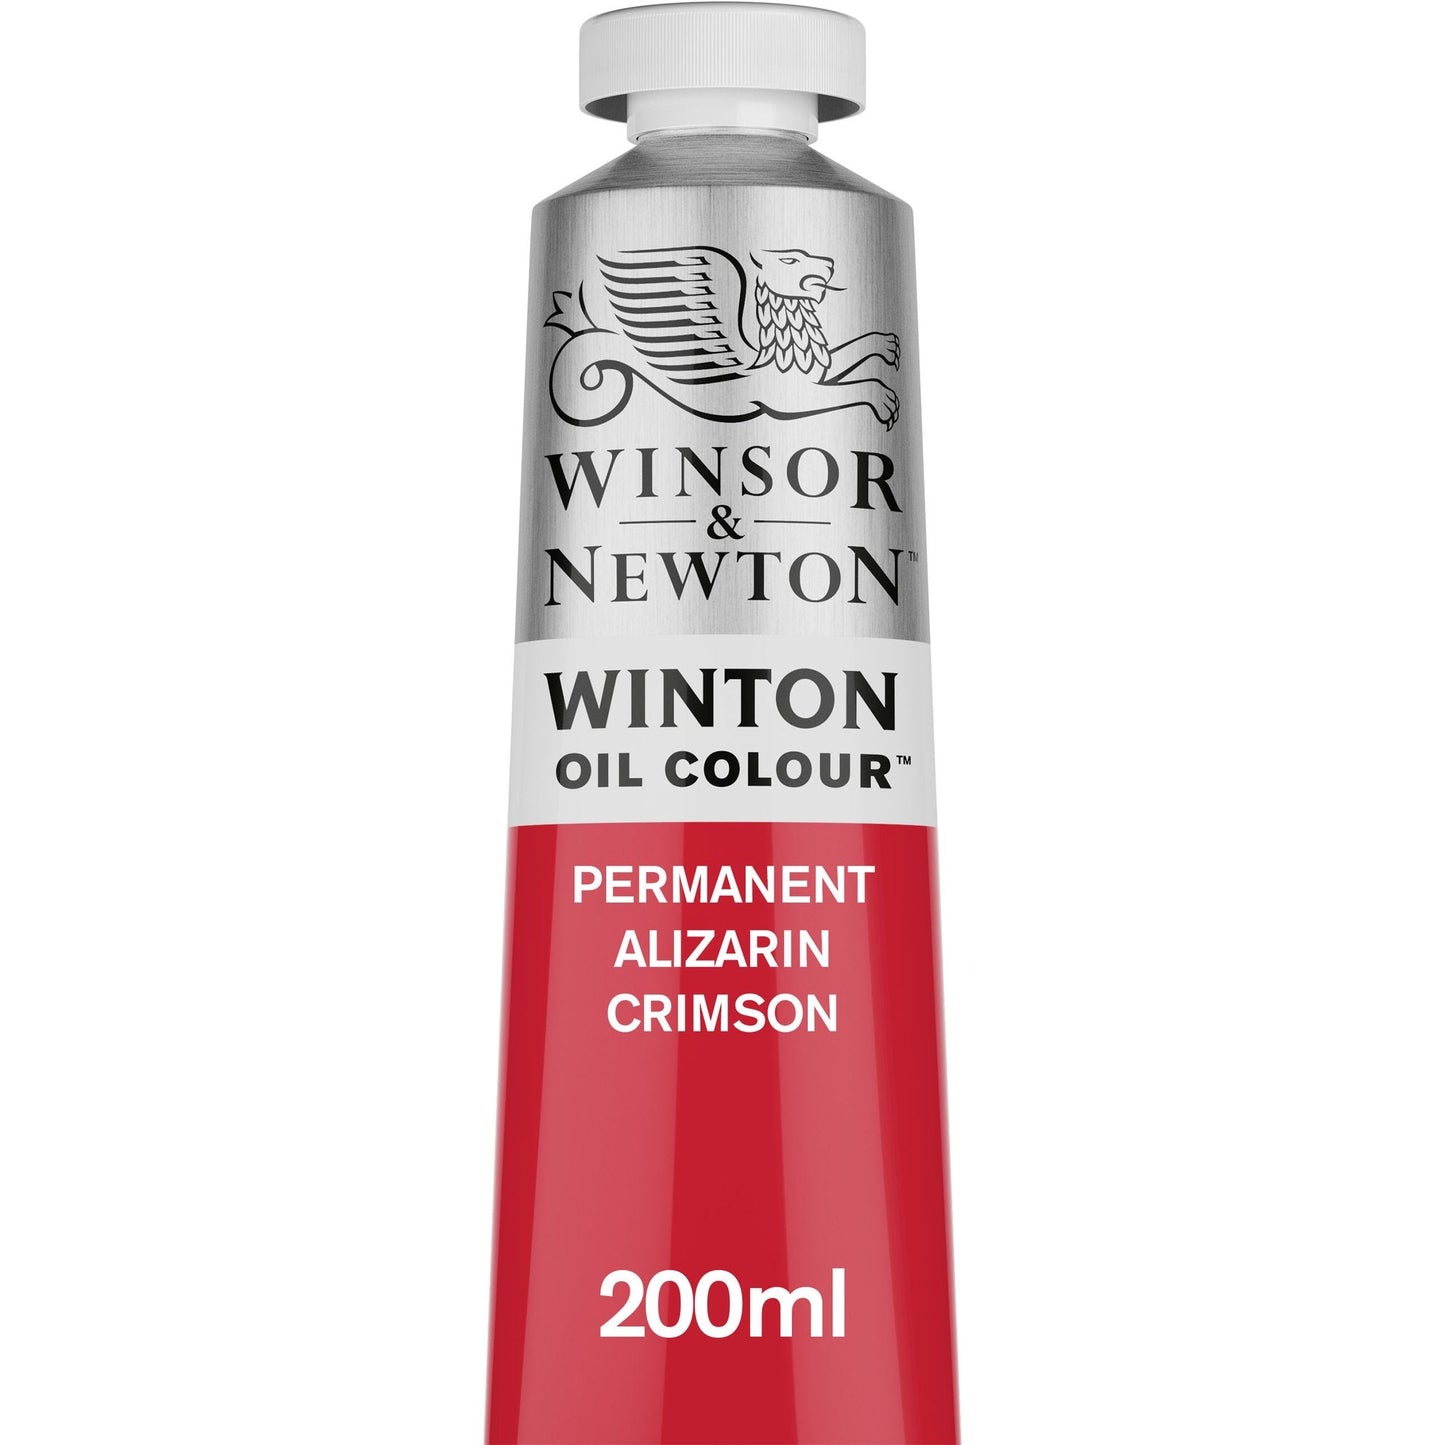 Winton Oil Colour 200ml Tube